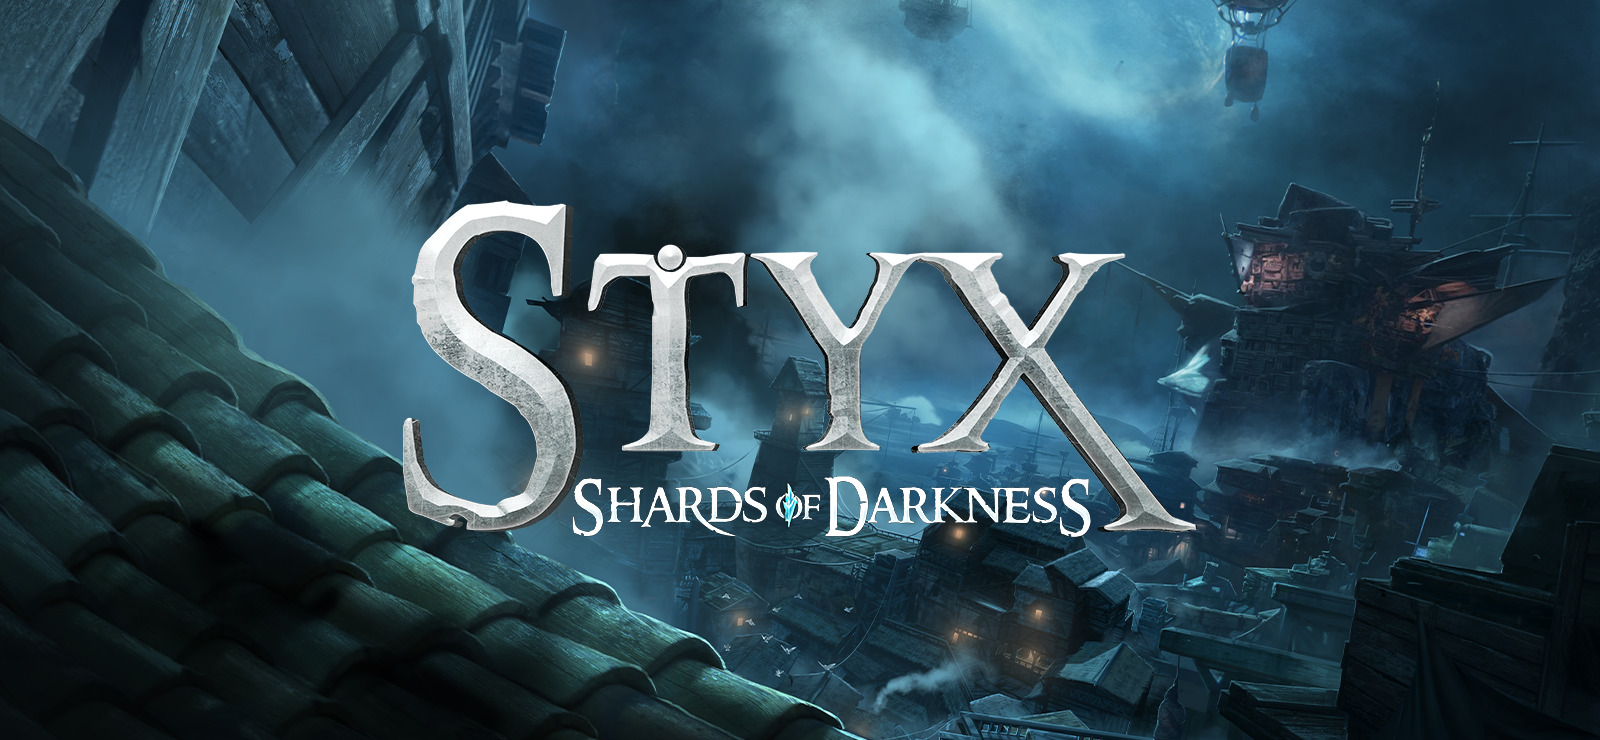 download free styx darkness